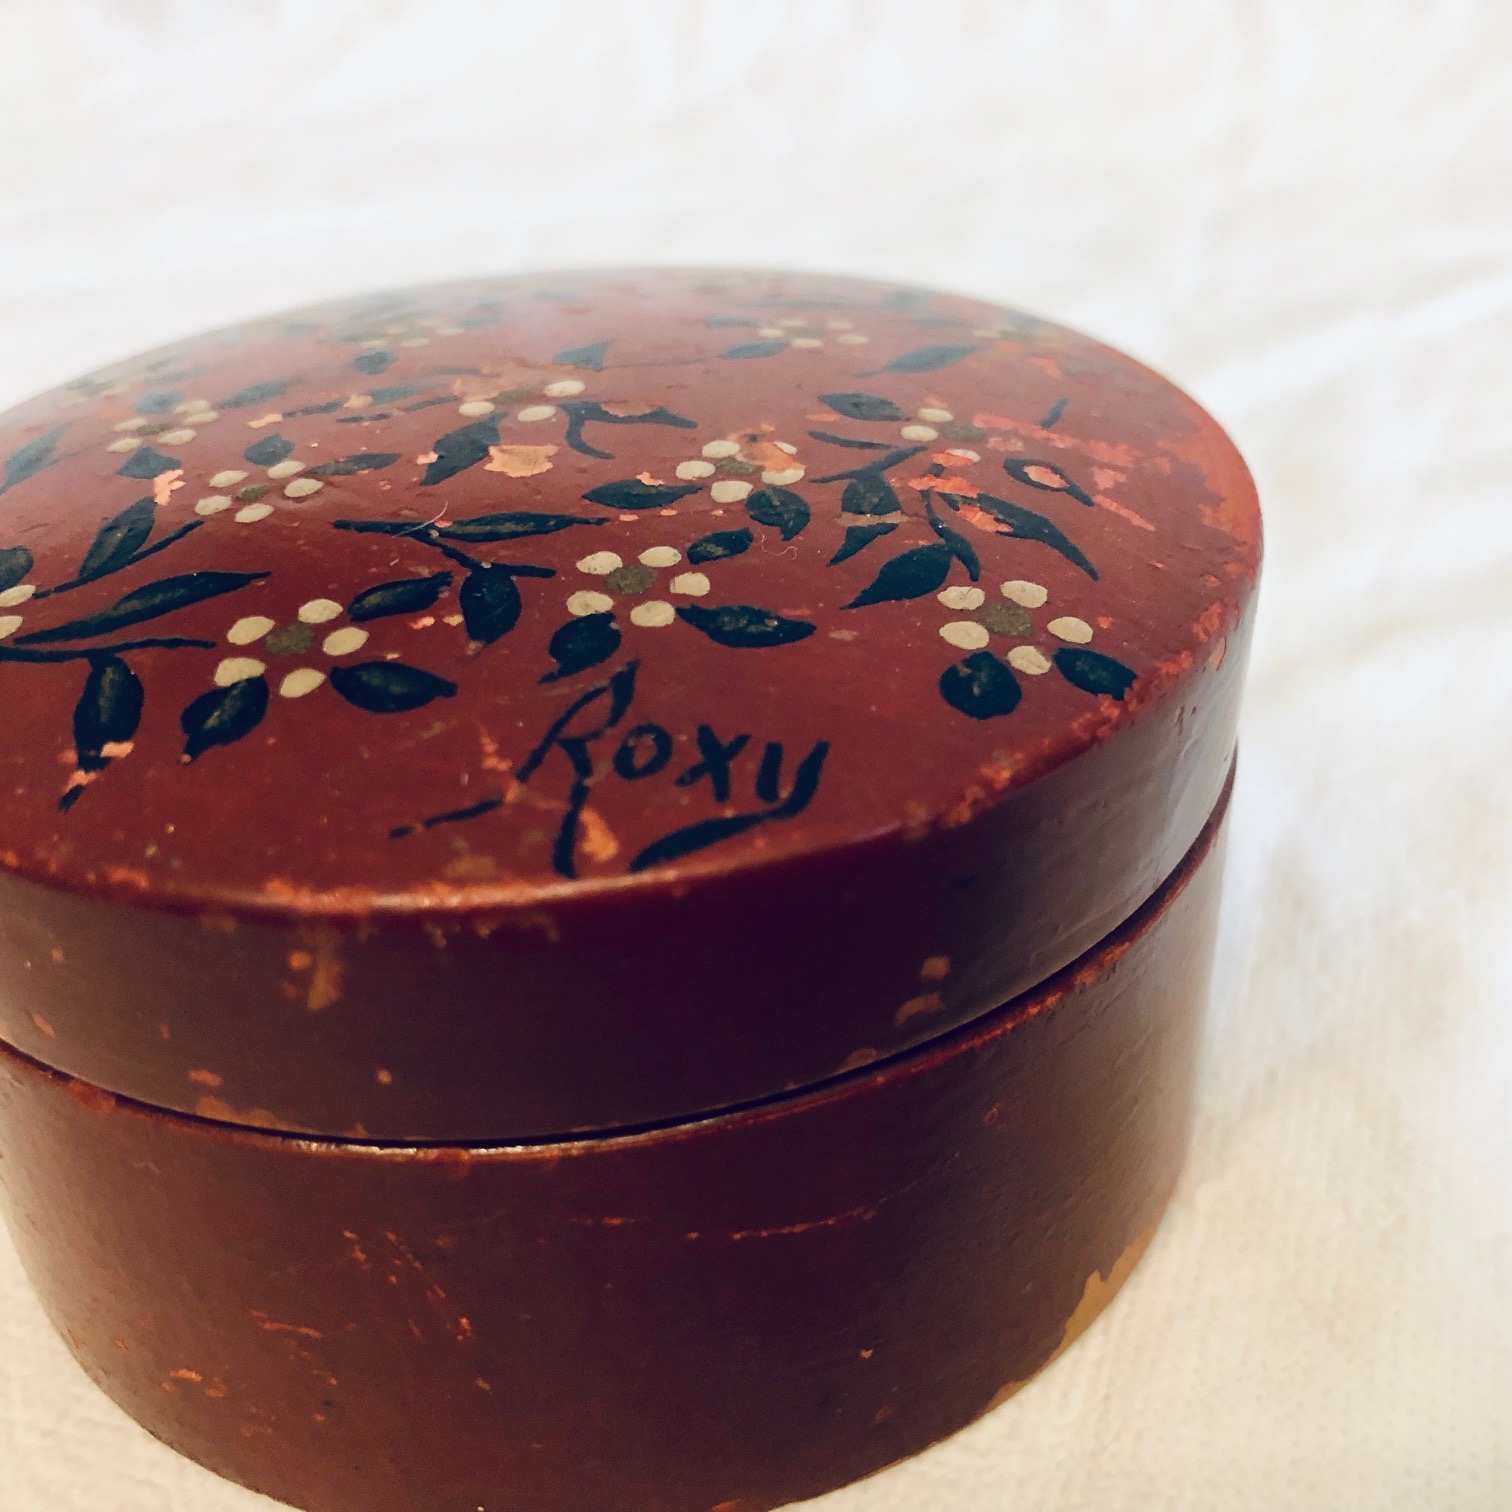 Petite boite en bois de rose - Moinat SA - Antiquités décoration